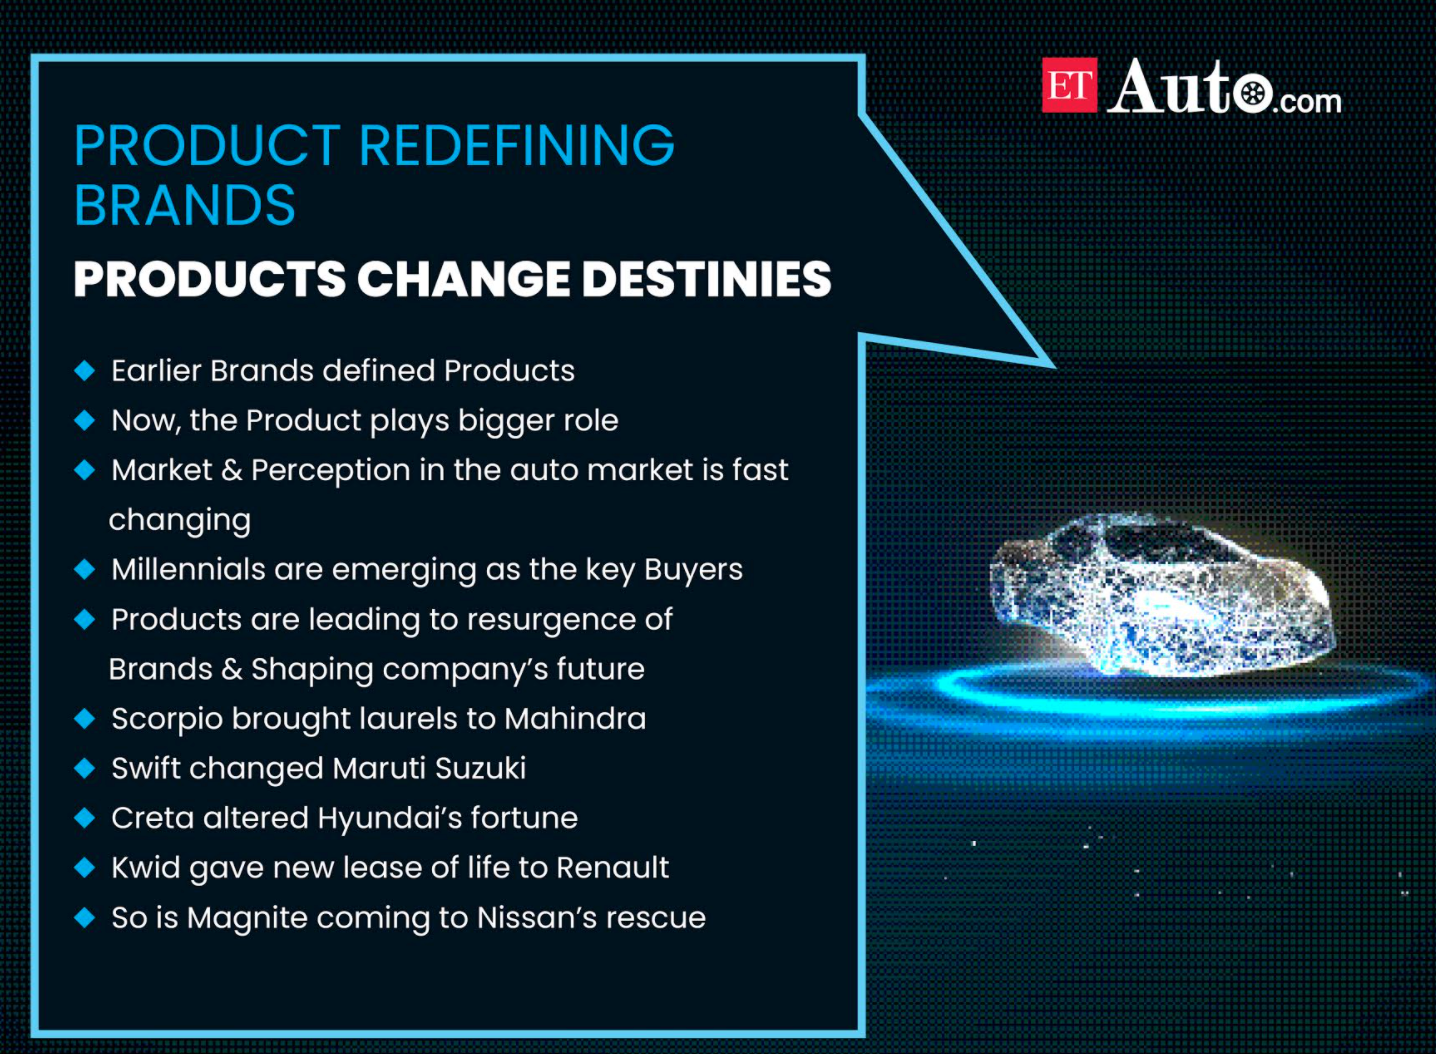 ETAuto Originals: Product defines brands in Indian auto industry